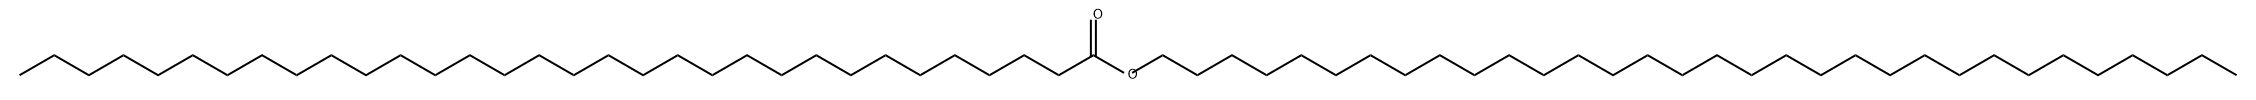 Dotriacontanoic acid dotriacontyl ester|